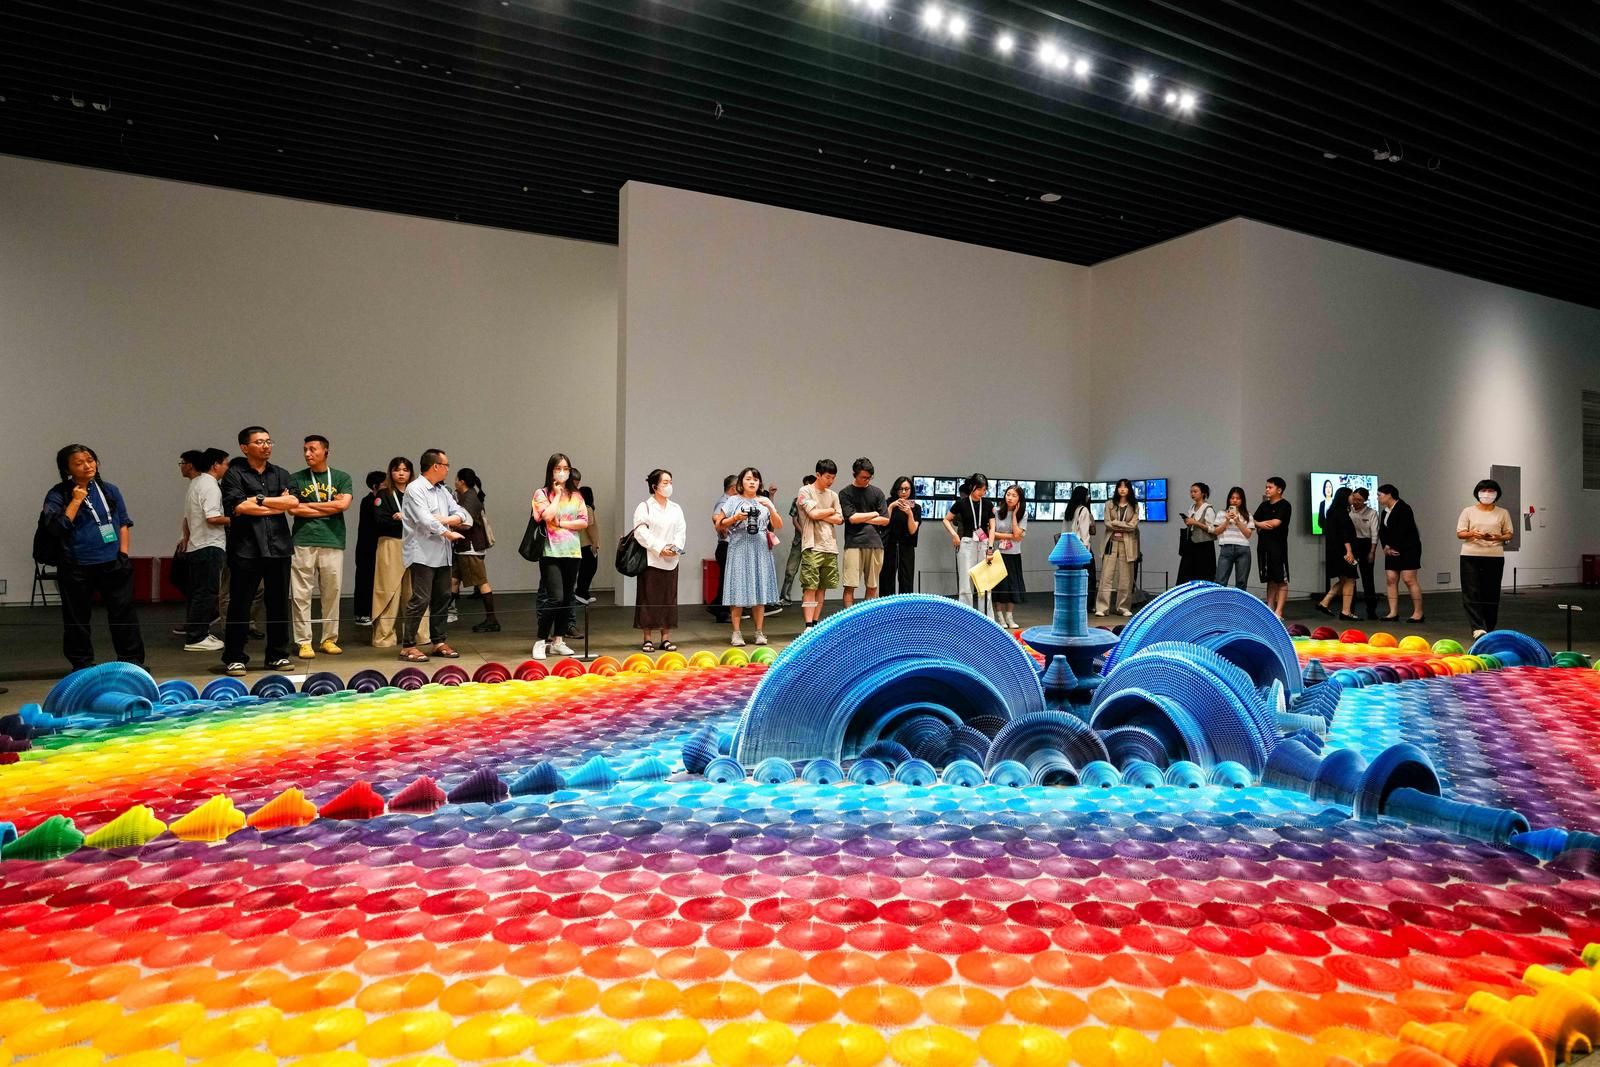 从本土出发思考未来变化，“迁徙——中国当代艺术展 ”在深圳美术馆展出